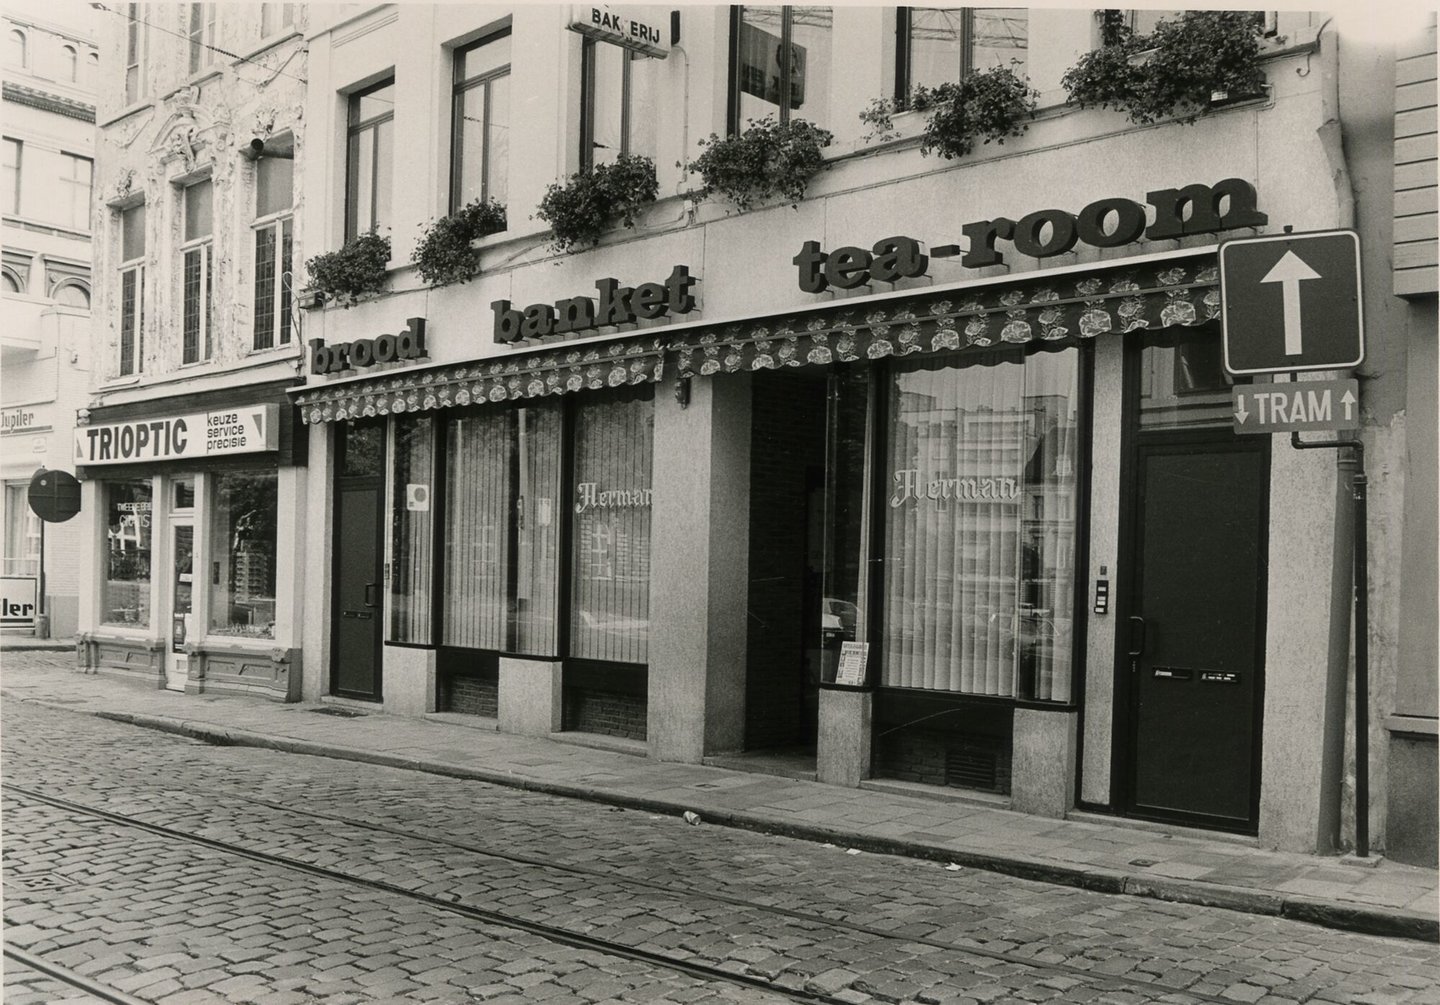 Straatbeeld met gevel van brood- en banketbakkerij - tearoom Herman en Trioptic in Gent